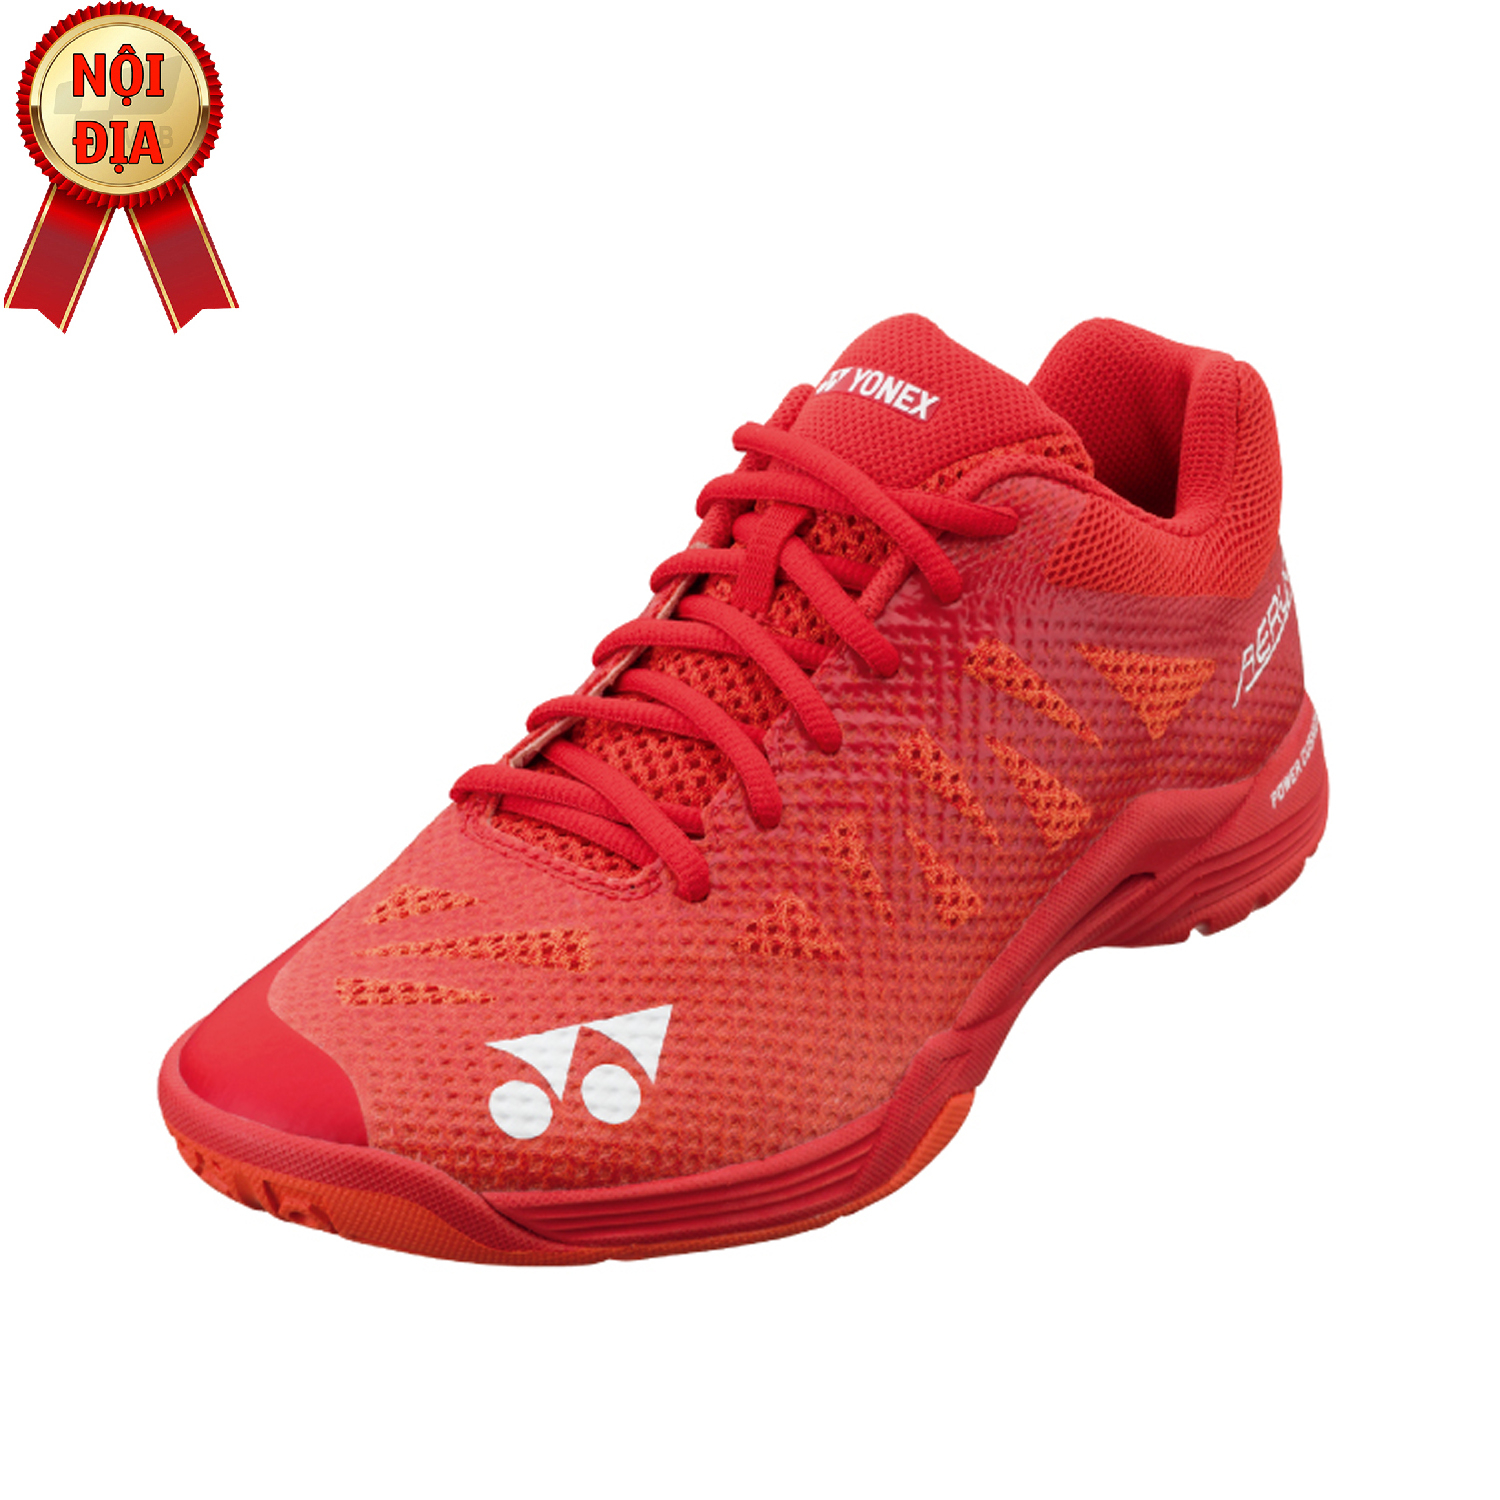 Giày cầu lông Yonex Aerus 3 - Đỏ (Nội địa Korea)